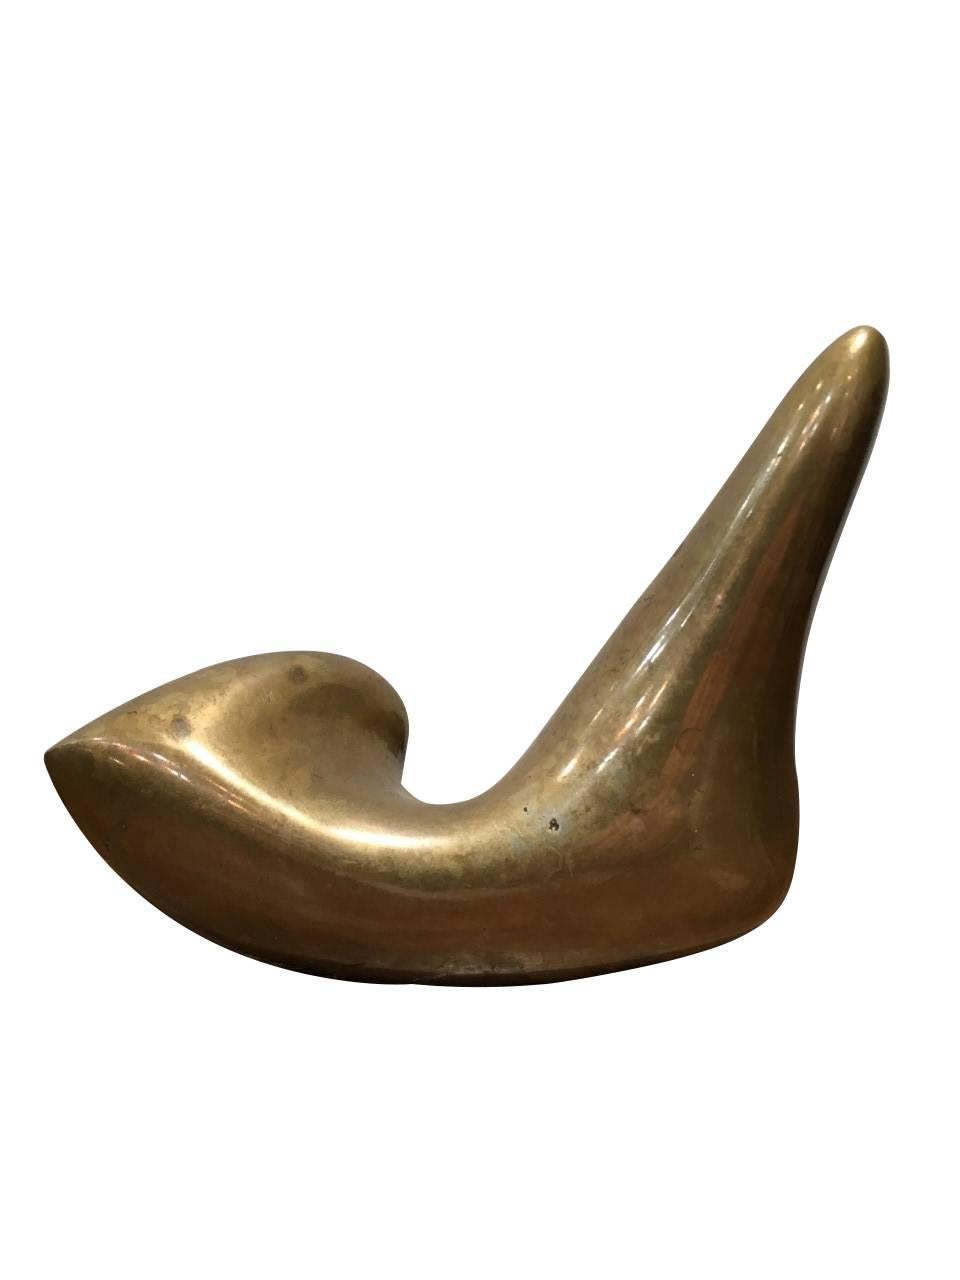 jean arp bronze sculpture